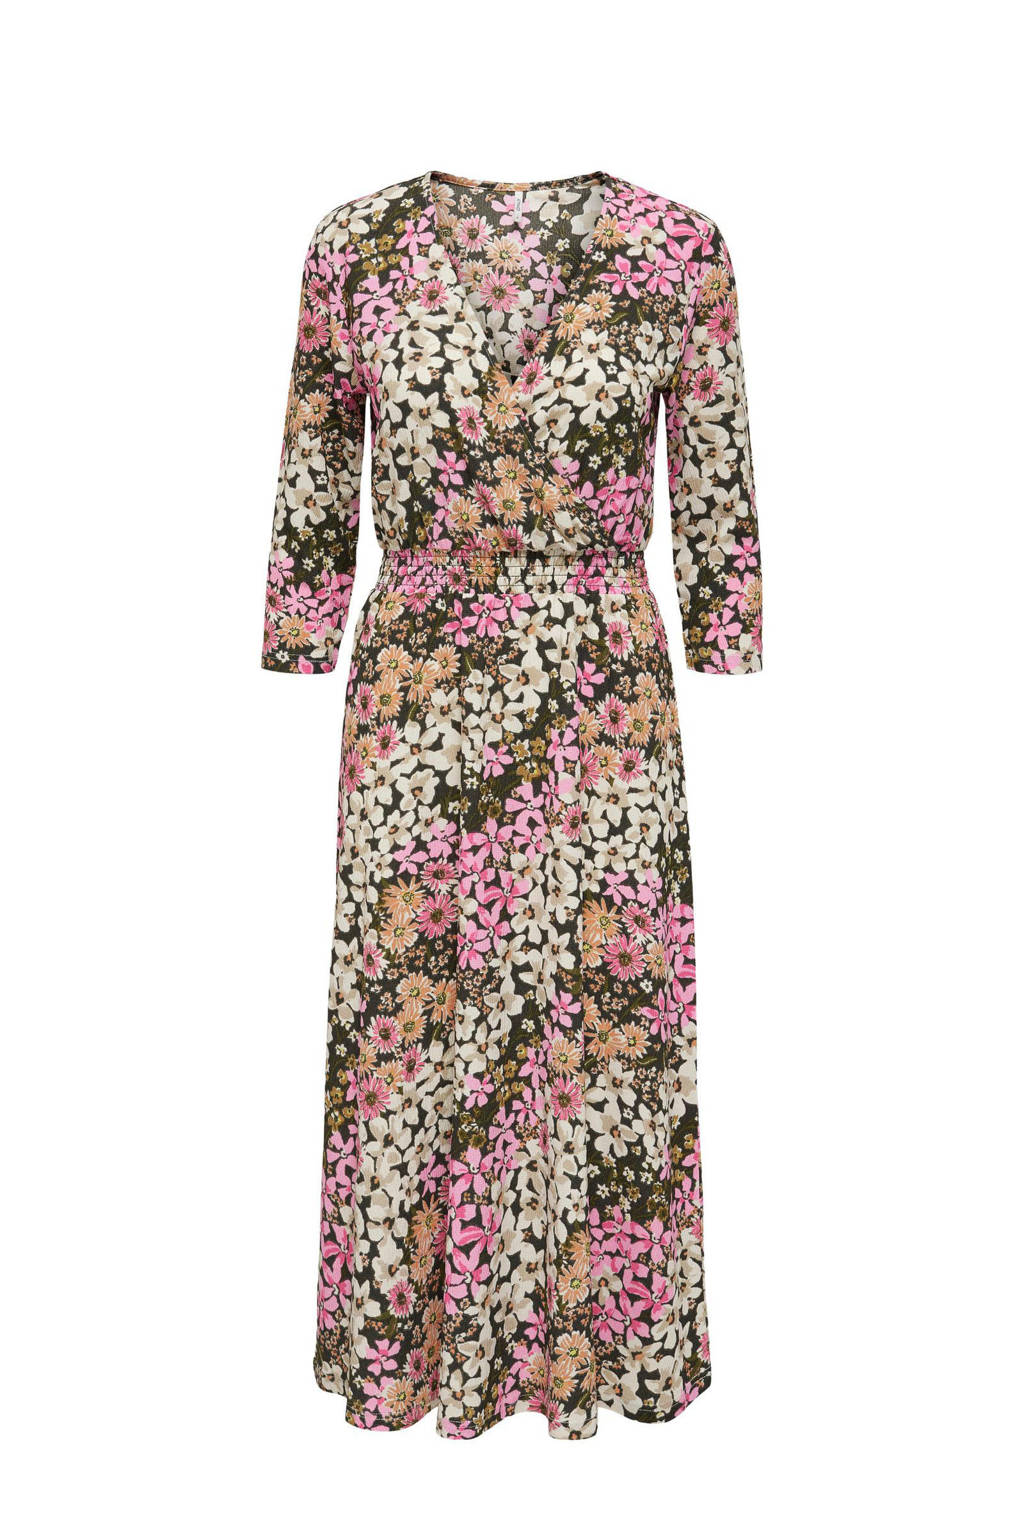 regeling evenwicht eindeloos ONLY maxi jurk ONLSAGA met all over print groen/roze | wehkamp